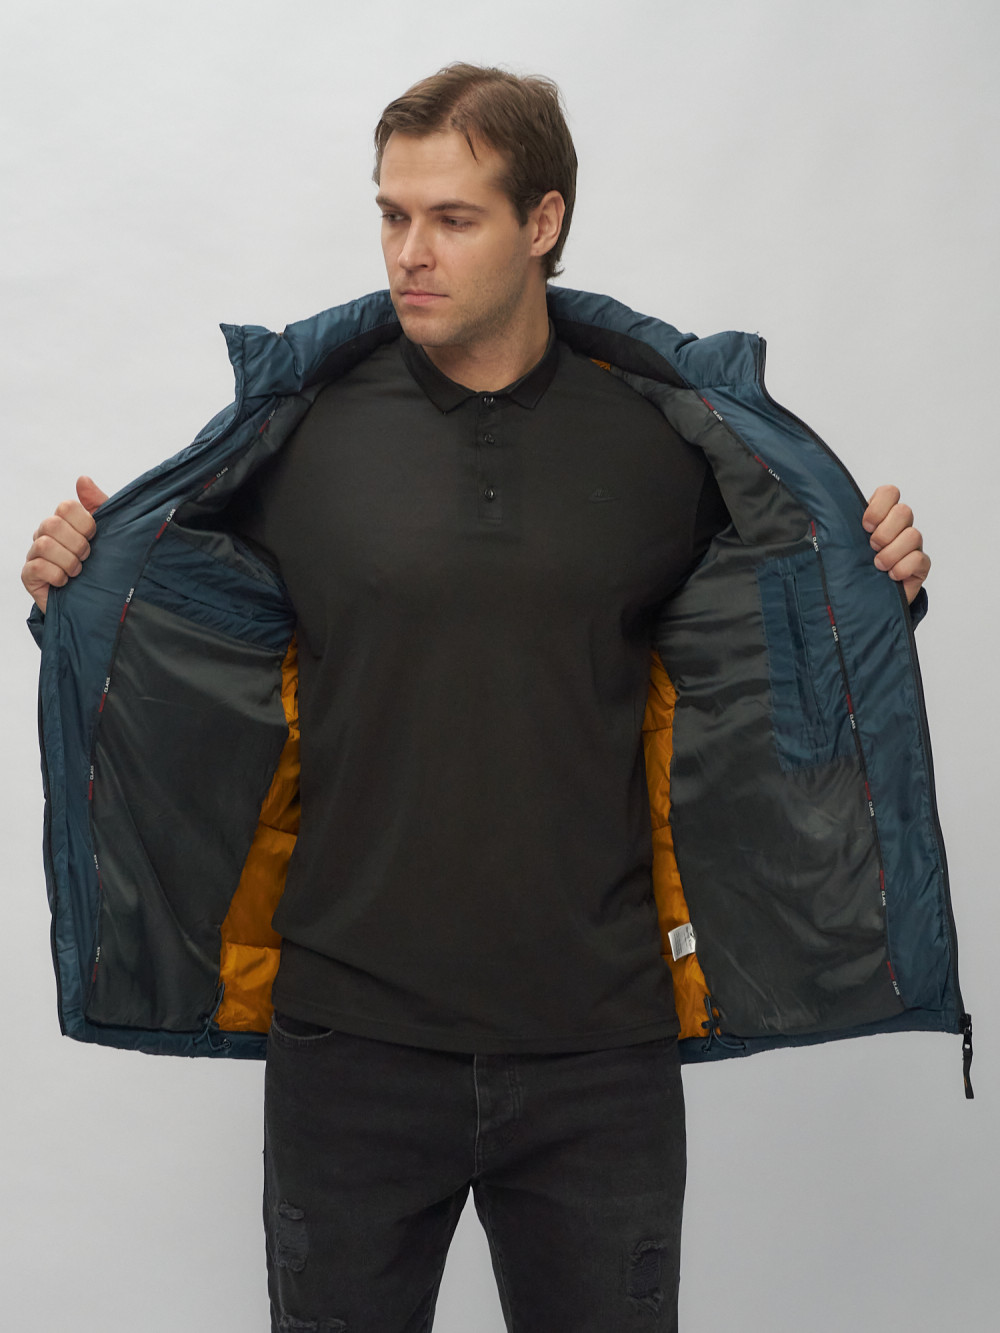 Купить куртку мужскую спортивную весеннюю оптом от производителя недорого в Москве 62186TS 1